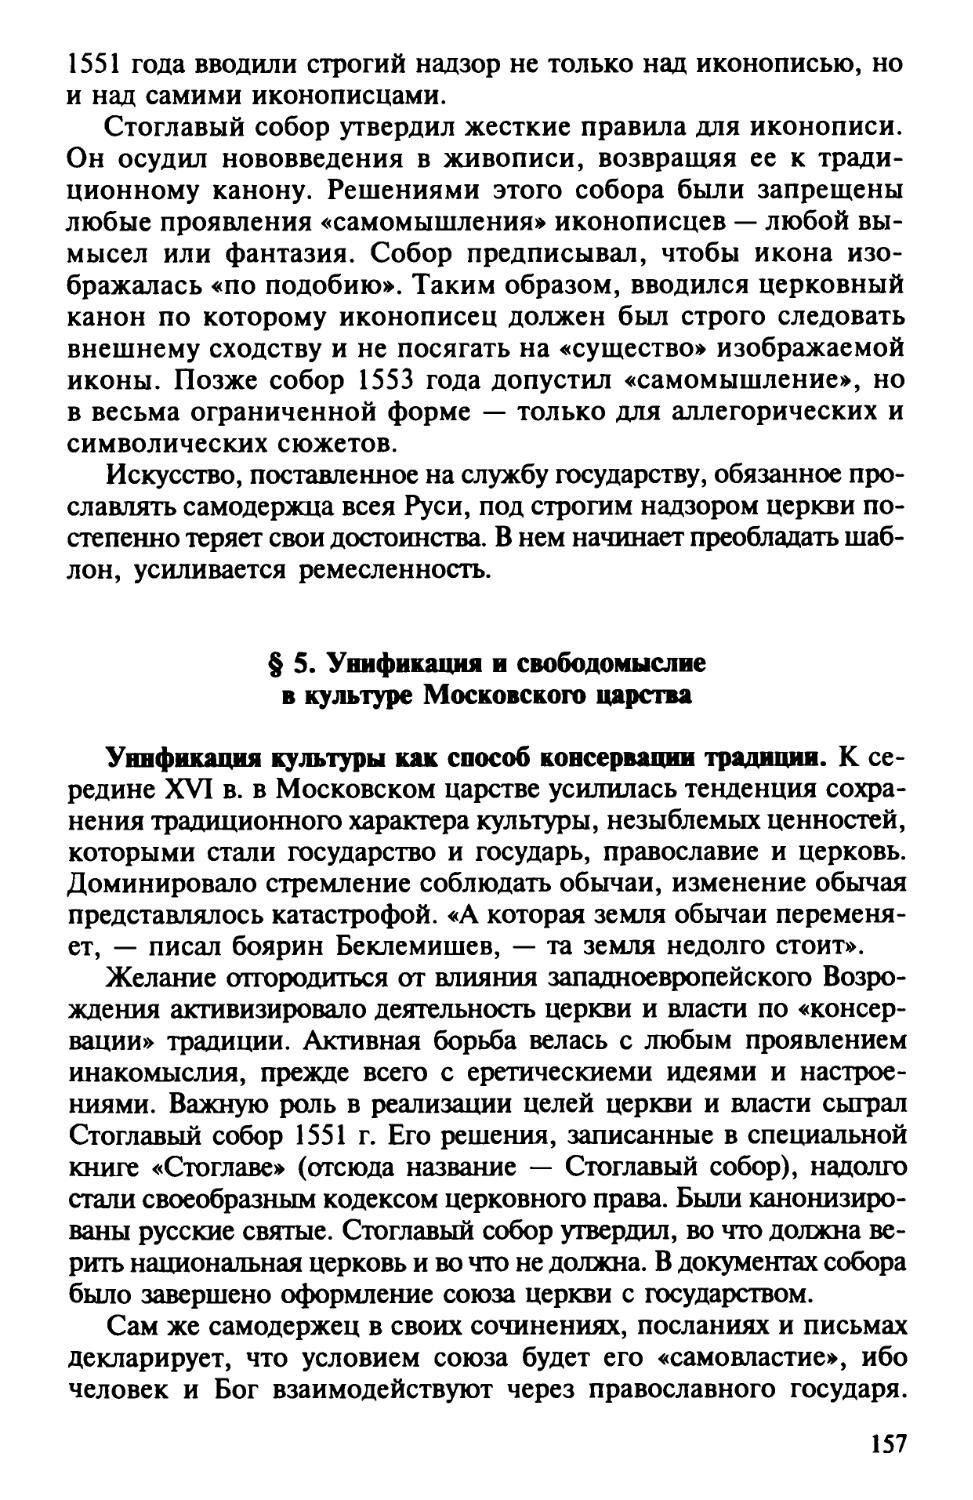 § 5. Унификация и свободомыслие в культуре Московского царства